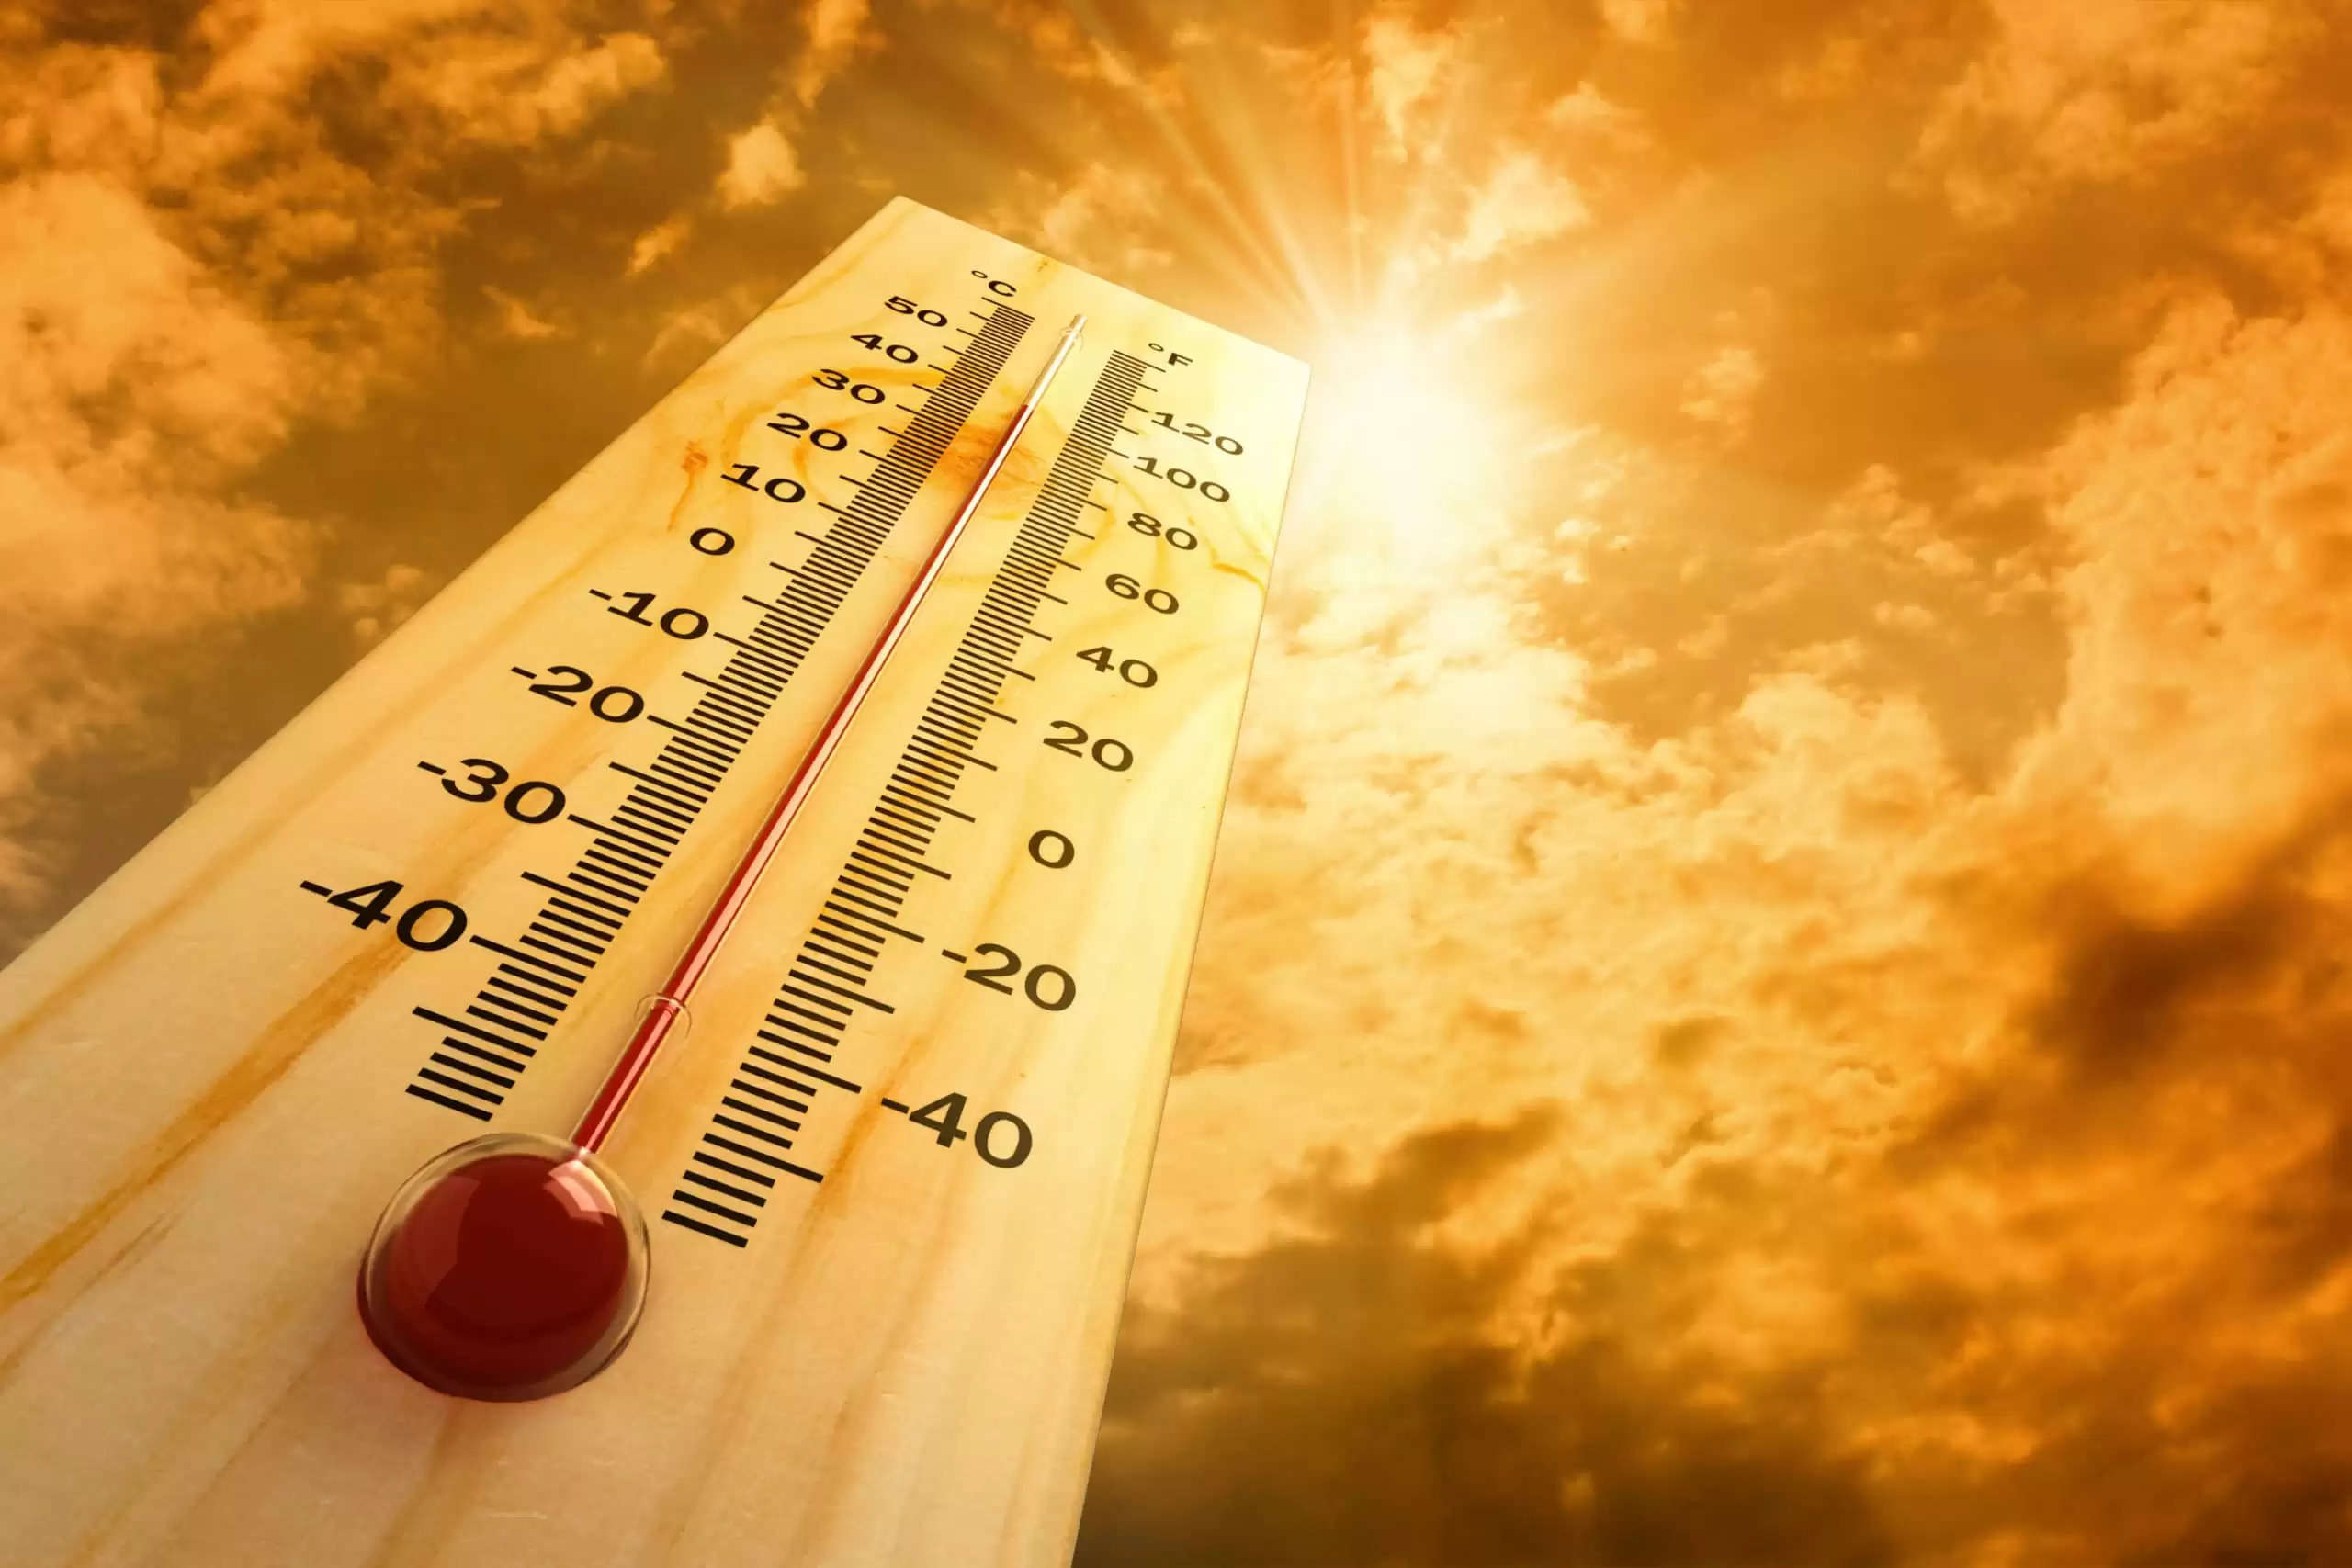 गर्मी ने तोड़ा रिकॉर्ड, हरियाणा के इस जिले में पहली बार अधिकतम तापमान 41 डिग्री दर्ज